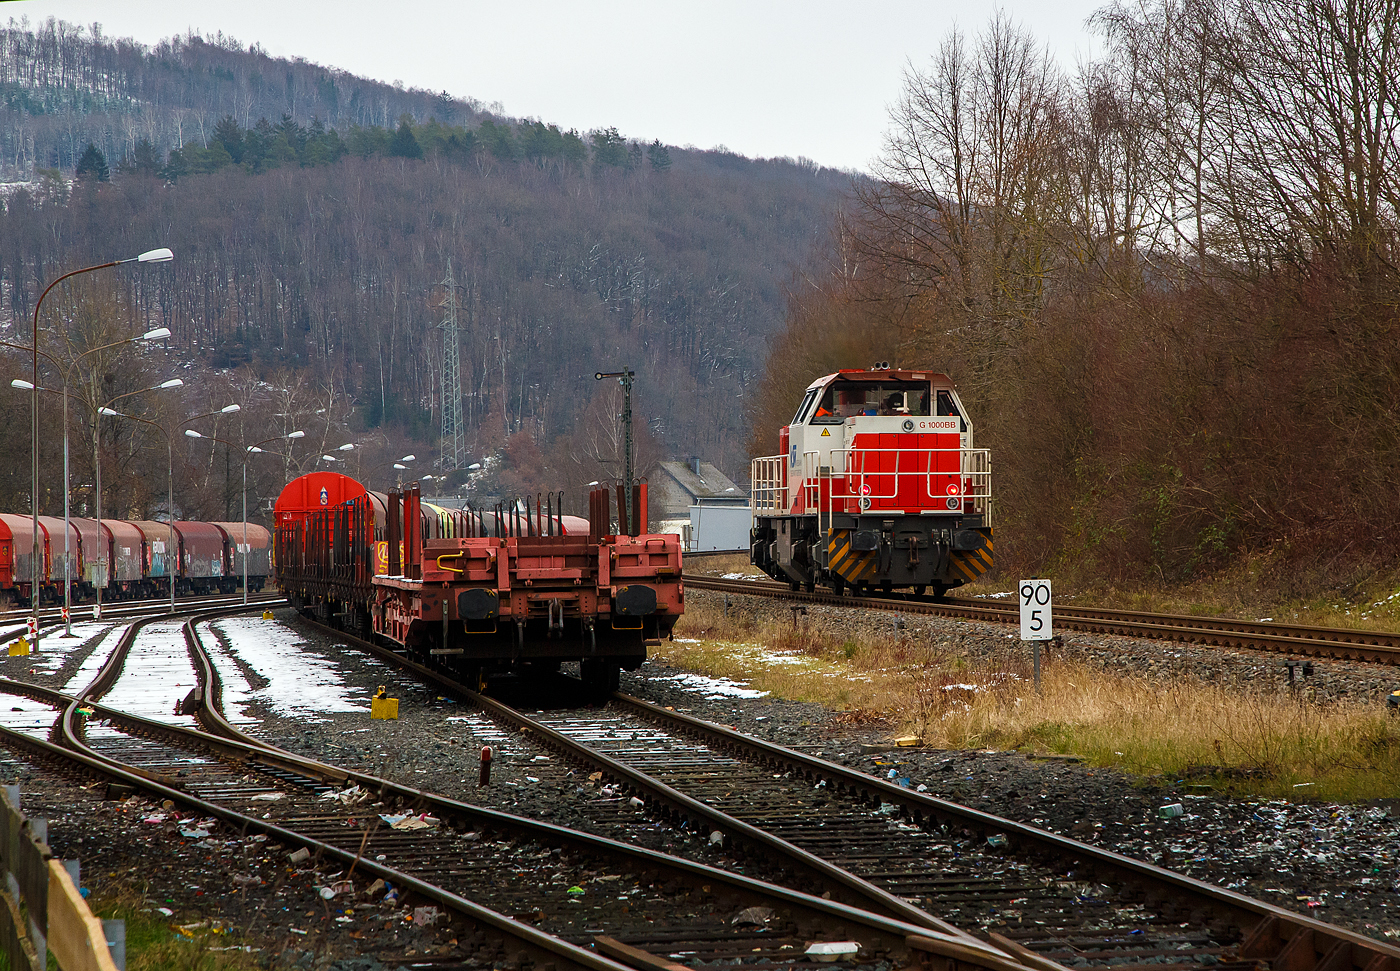 Güterverkehr gibt es noch in Herdorf....
Die KSW 47 (92 80 1271 027-5 D-KSW), ex D 2 der HFM, eine Vossloh G 1000 BB der KSW (Kreisbahn Siegen-Wittgenstein), fährt am 24.01.2023 von Herdorf auf der Hellertalbahn (KBS 462 / Strecke-Nr. 2651) in Richtung Haiger los.

Normalerweise würde sie in Richtung Betzdorf fahren, aber der Streckenanschnitt Herdorf – Betzdorf ist bis min. Ende April gesperrt, so muss die KSW den Umweg über Haiger fahren. Wobei hier als Lokzug ist es nur der Umweg und der entsprechende Mehrverbrauch an Kraftstoff, aber für den Güterverkehr ist noch die Streckenklasse sehr entscheidend und die beträgt bei dem Streckenanschnitt Herdorf – Haiger nur CE (anstatt D4 zwischen Betzdorf und Herdorf). Bei CE beträgt die Radsatzlast max. 20 t bei D4 aber 22,5 t. Dadurch kann ein Coil weniger geladen werden, da man nicht gerademal Coils vierteln kann, ergibt sich daraus ein bis zu 35% geringeres Ladegewicht und ein Mehraufwendung von Waggons.
